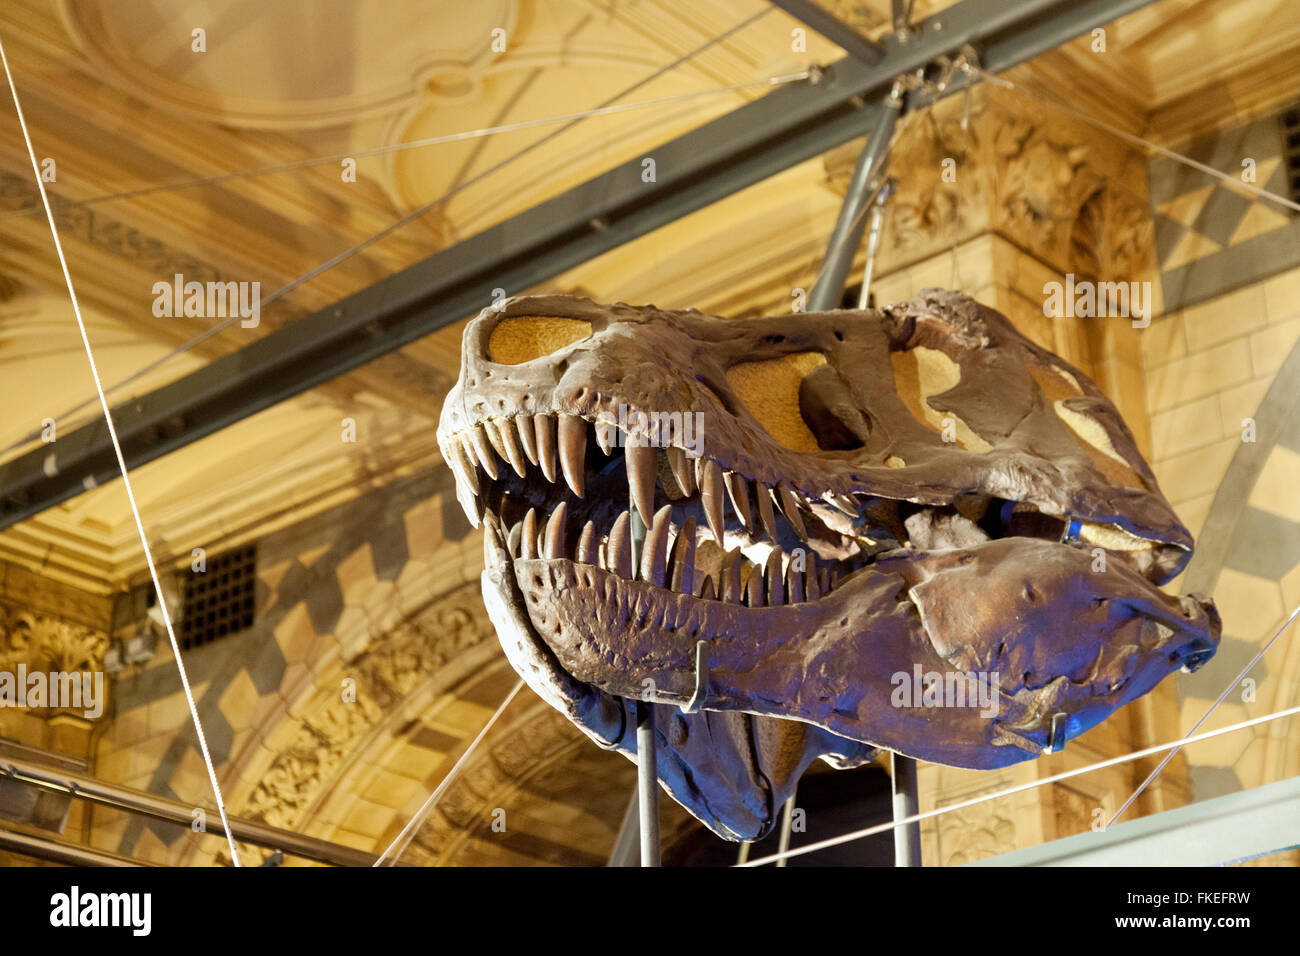 Der versteinerte Schädel von einem T-Rex (Tyrannosaurus Rex) Dinosaurier, Natural History Museum, London UK Stockfoto